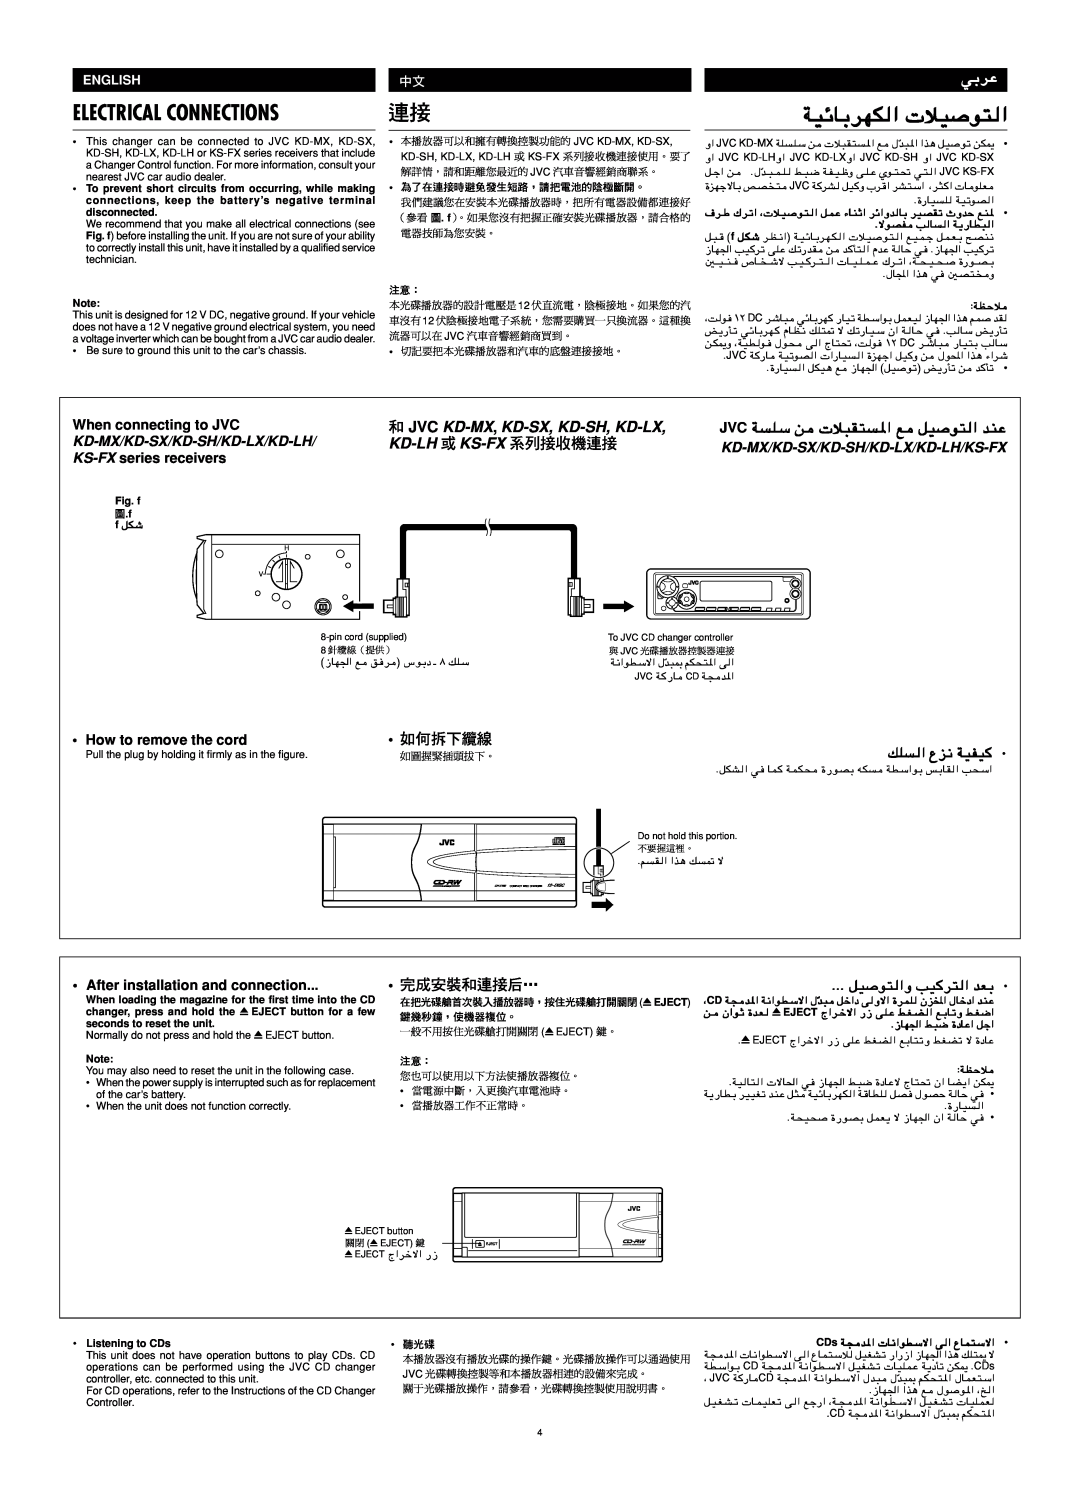 JVC LVT0847-001A Electrical Connections, ﺔﻴﺋﺎﺑﺮﻬﻜﻟا تﻼﻴﺻﻮﺘﻟا, Jvc ﺔﺴﻠﺳ ﻦﻣ تﻼﺒﻘﺘﺴﳌا ﻊﻣ ﻞﻴﺻﻮﺘﻟا ﺪﻨﻋ, How to remove the cord 